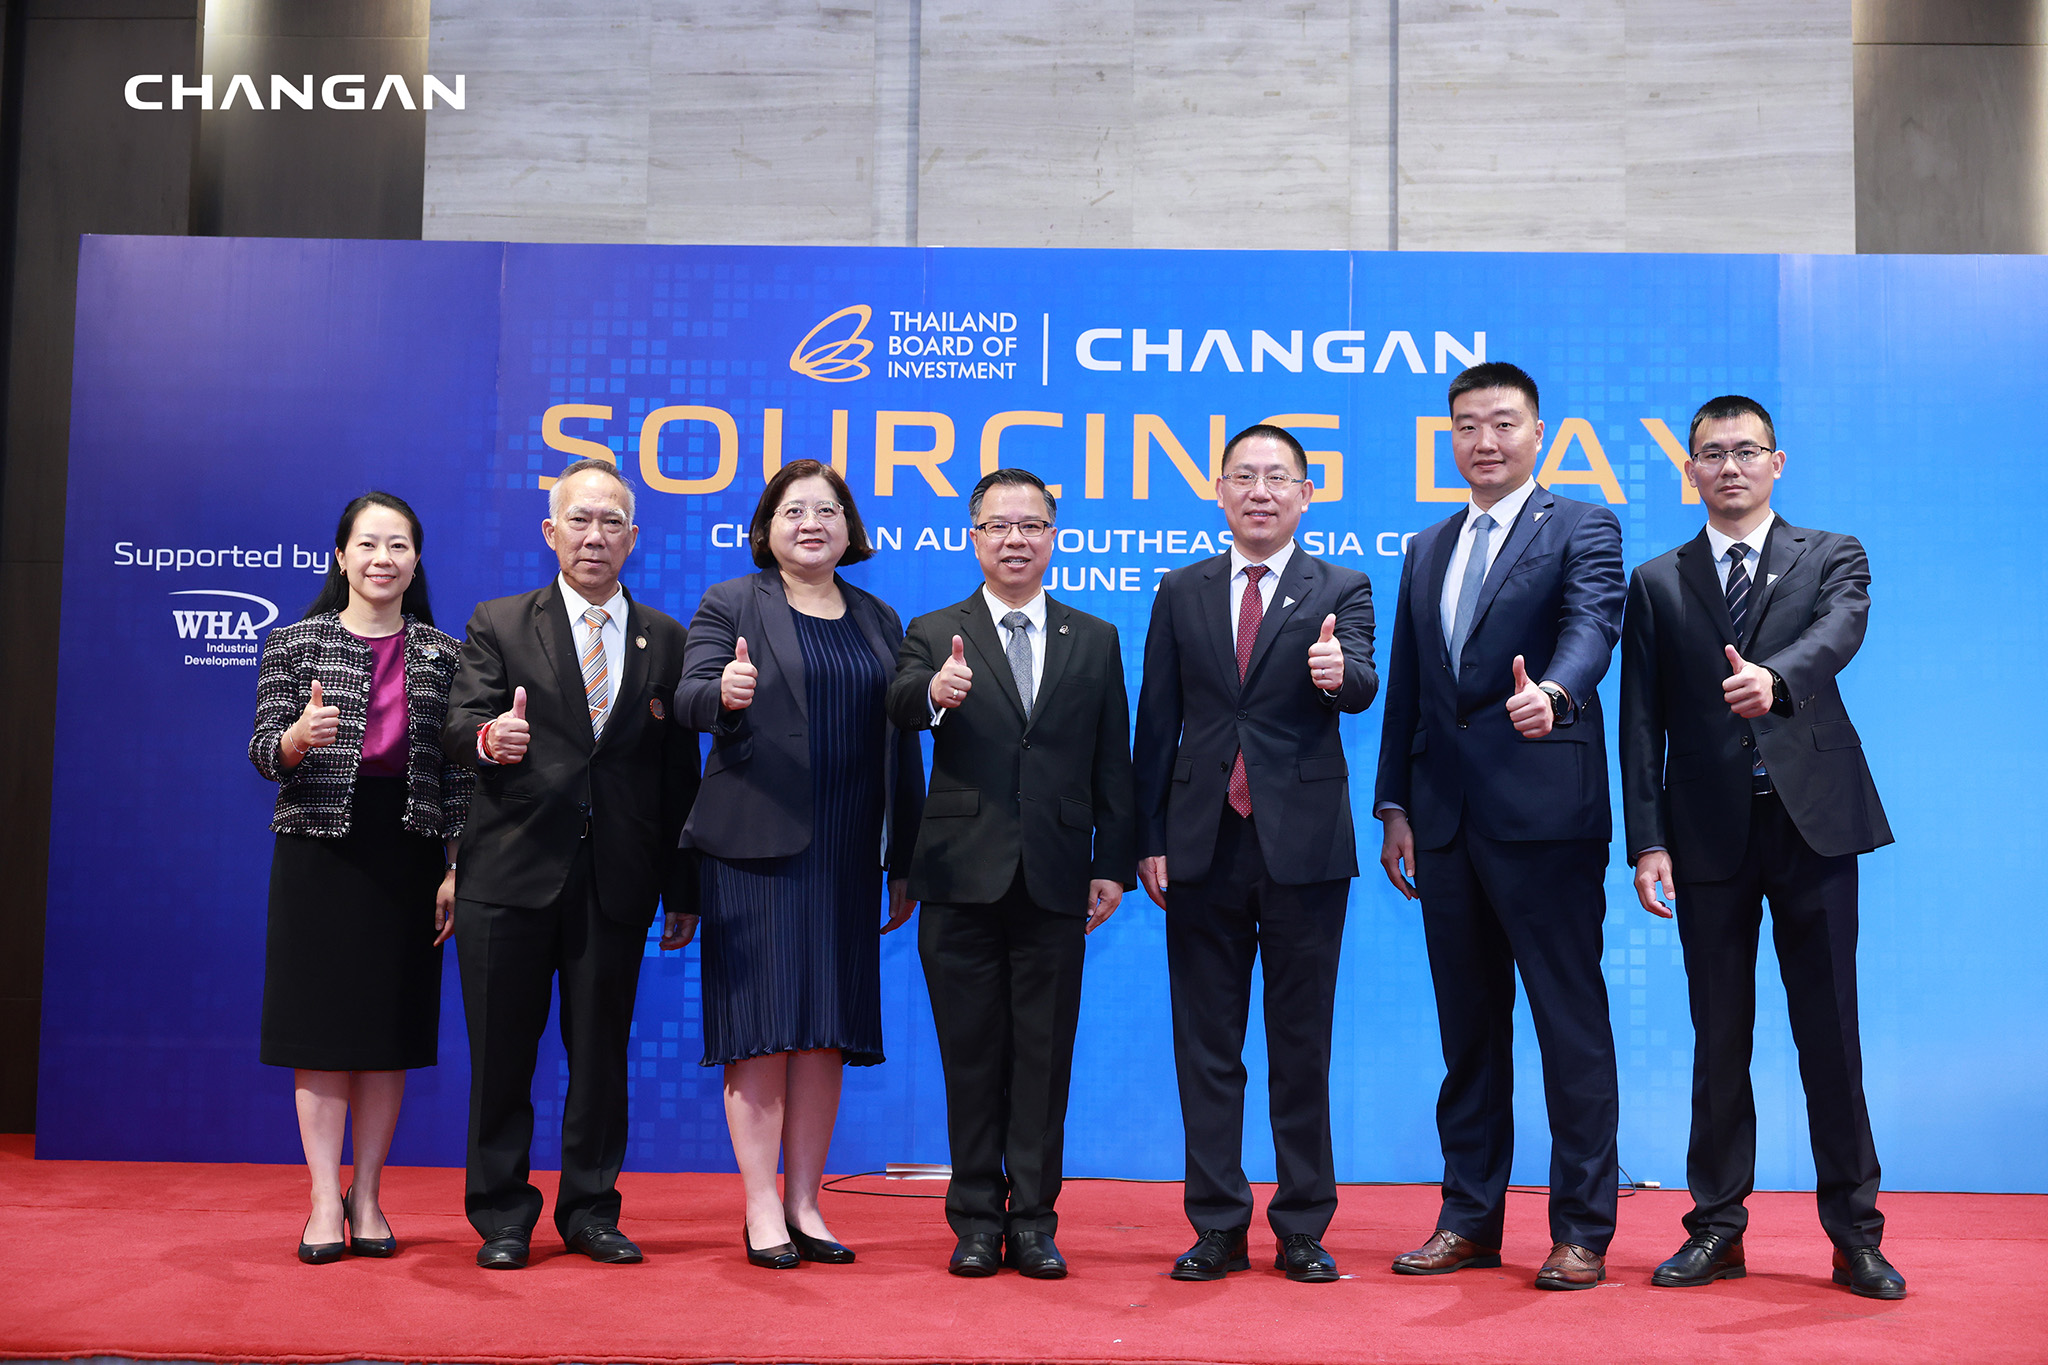 CHANGAN ผนึกกำลัง BOI จัดงาน CHANGAN Sourcing Day ดึงผู้ผลิตชิ้นส่วนรถยนต์ไทย ร่วมเป็นซัพพลายเชนกว่า 60% และเพิ่มพนักงานไทยมากกว่า 90%